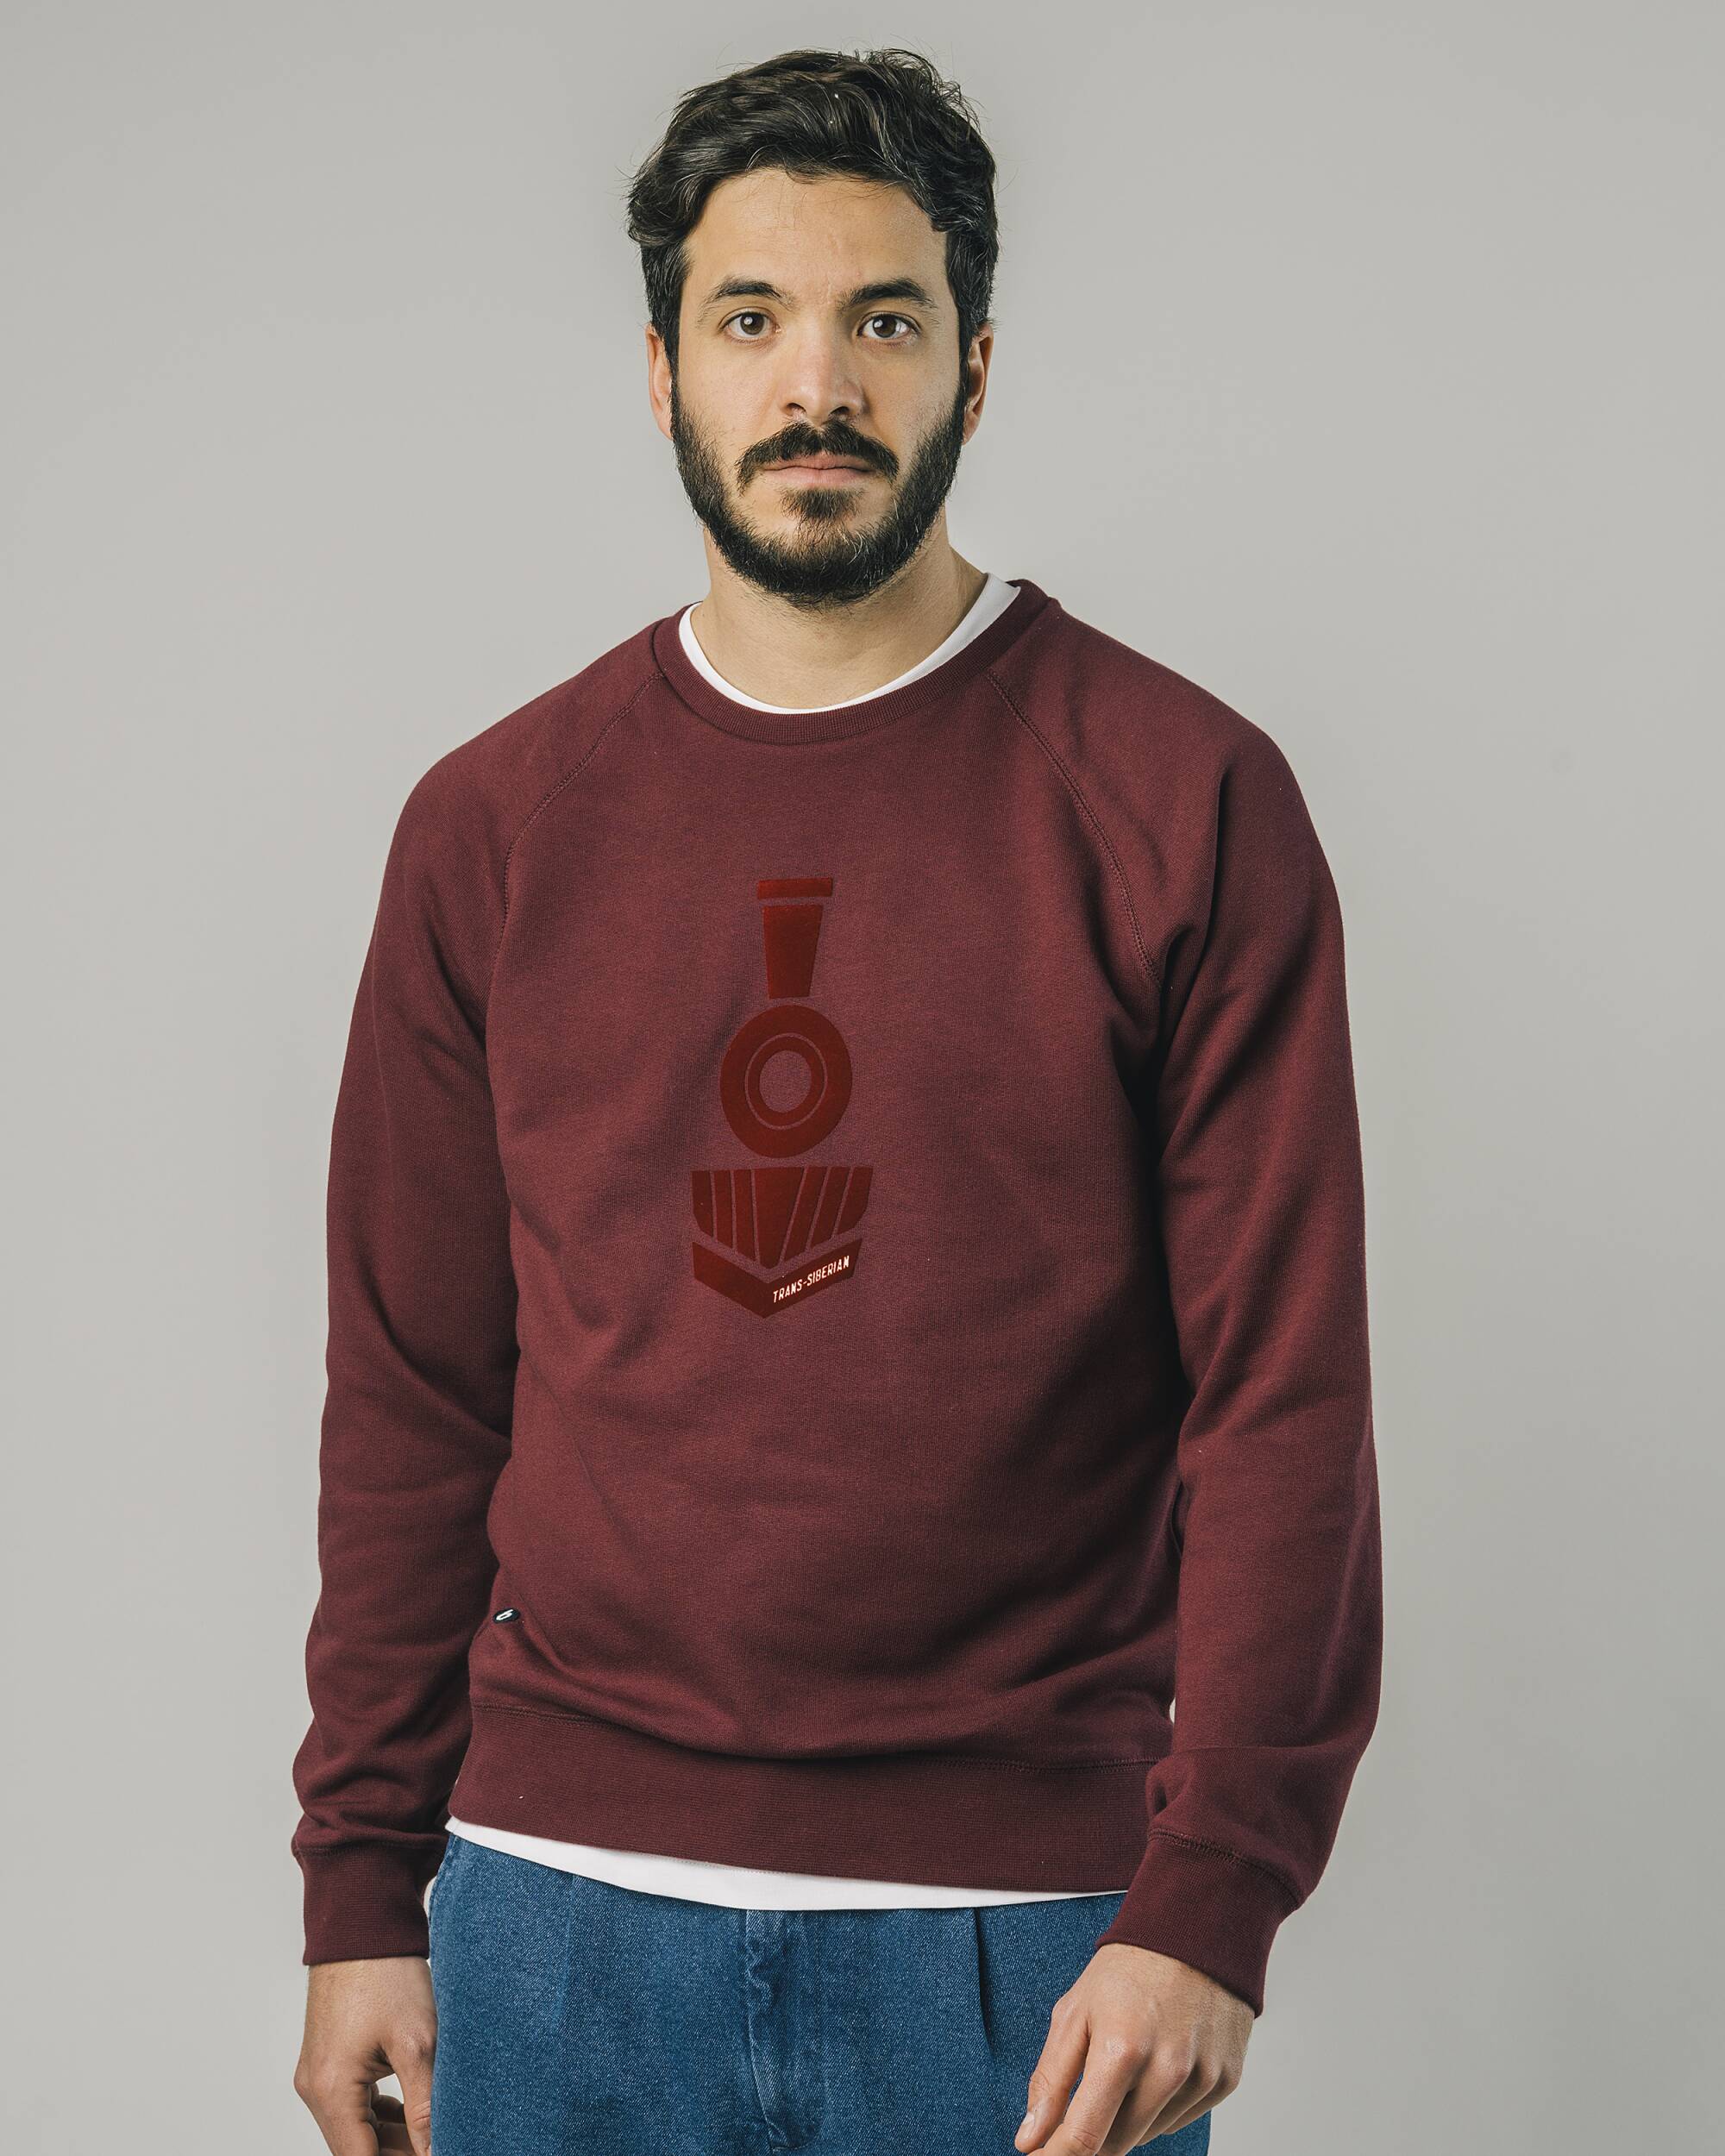 Sweat-shirt "Locomotive" en Bordeaux - rouge en coton 100% biologique de Brava Fabrics